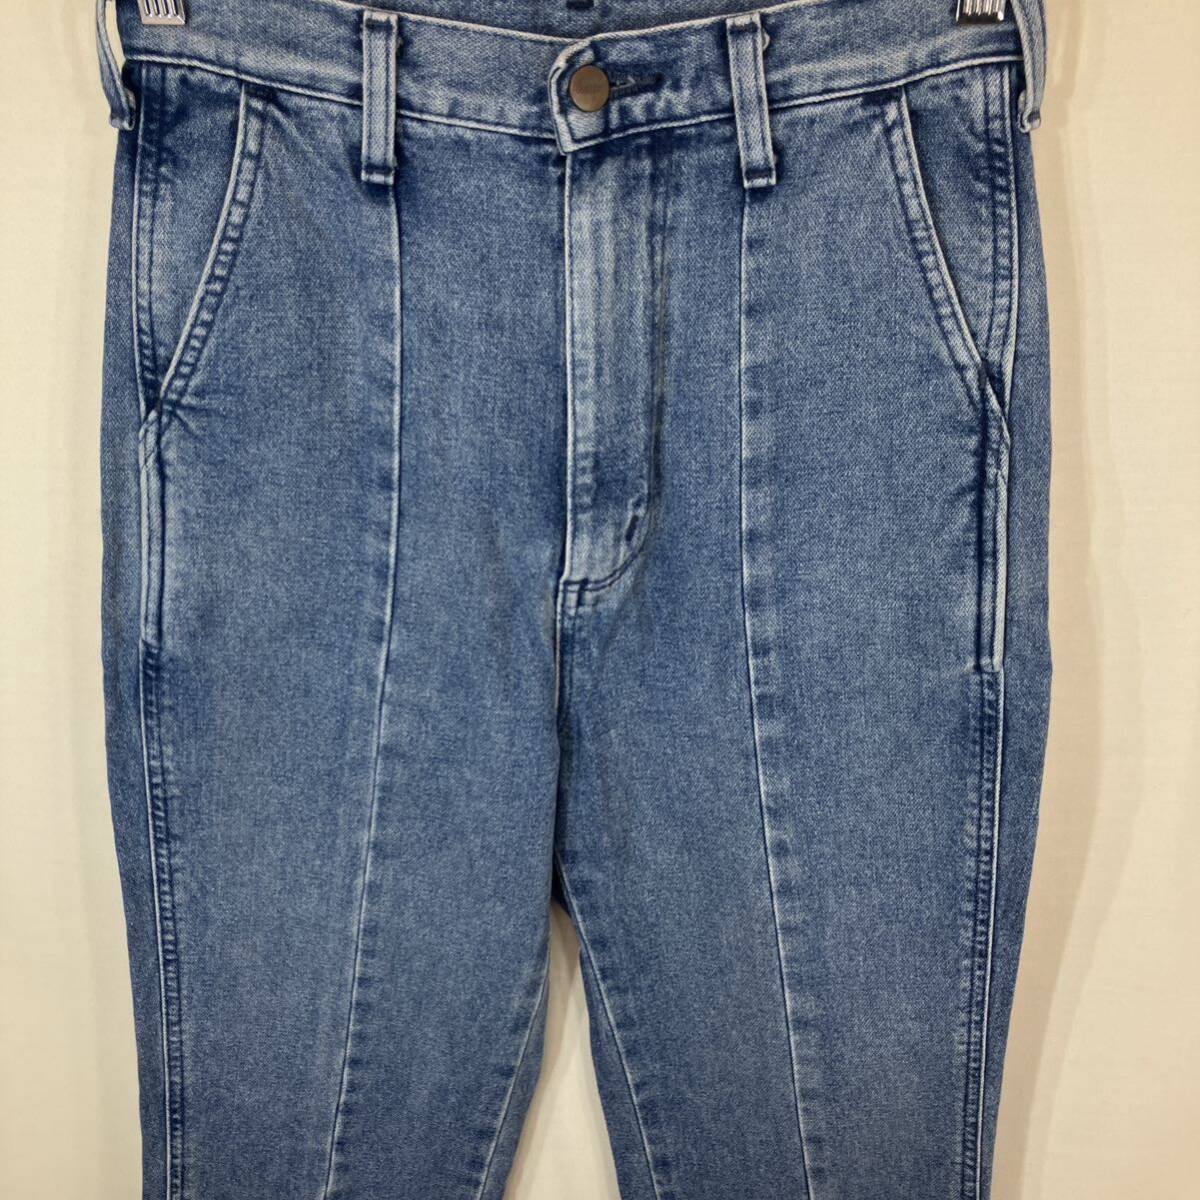 WRANGLER Wrangler ladies женский центральный Press s крышка брюки WL1754 ботинки cut брюки Denim джинсы ji- хлеб size:S